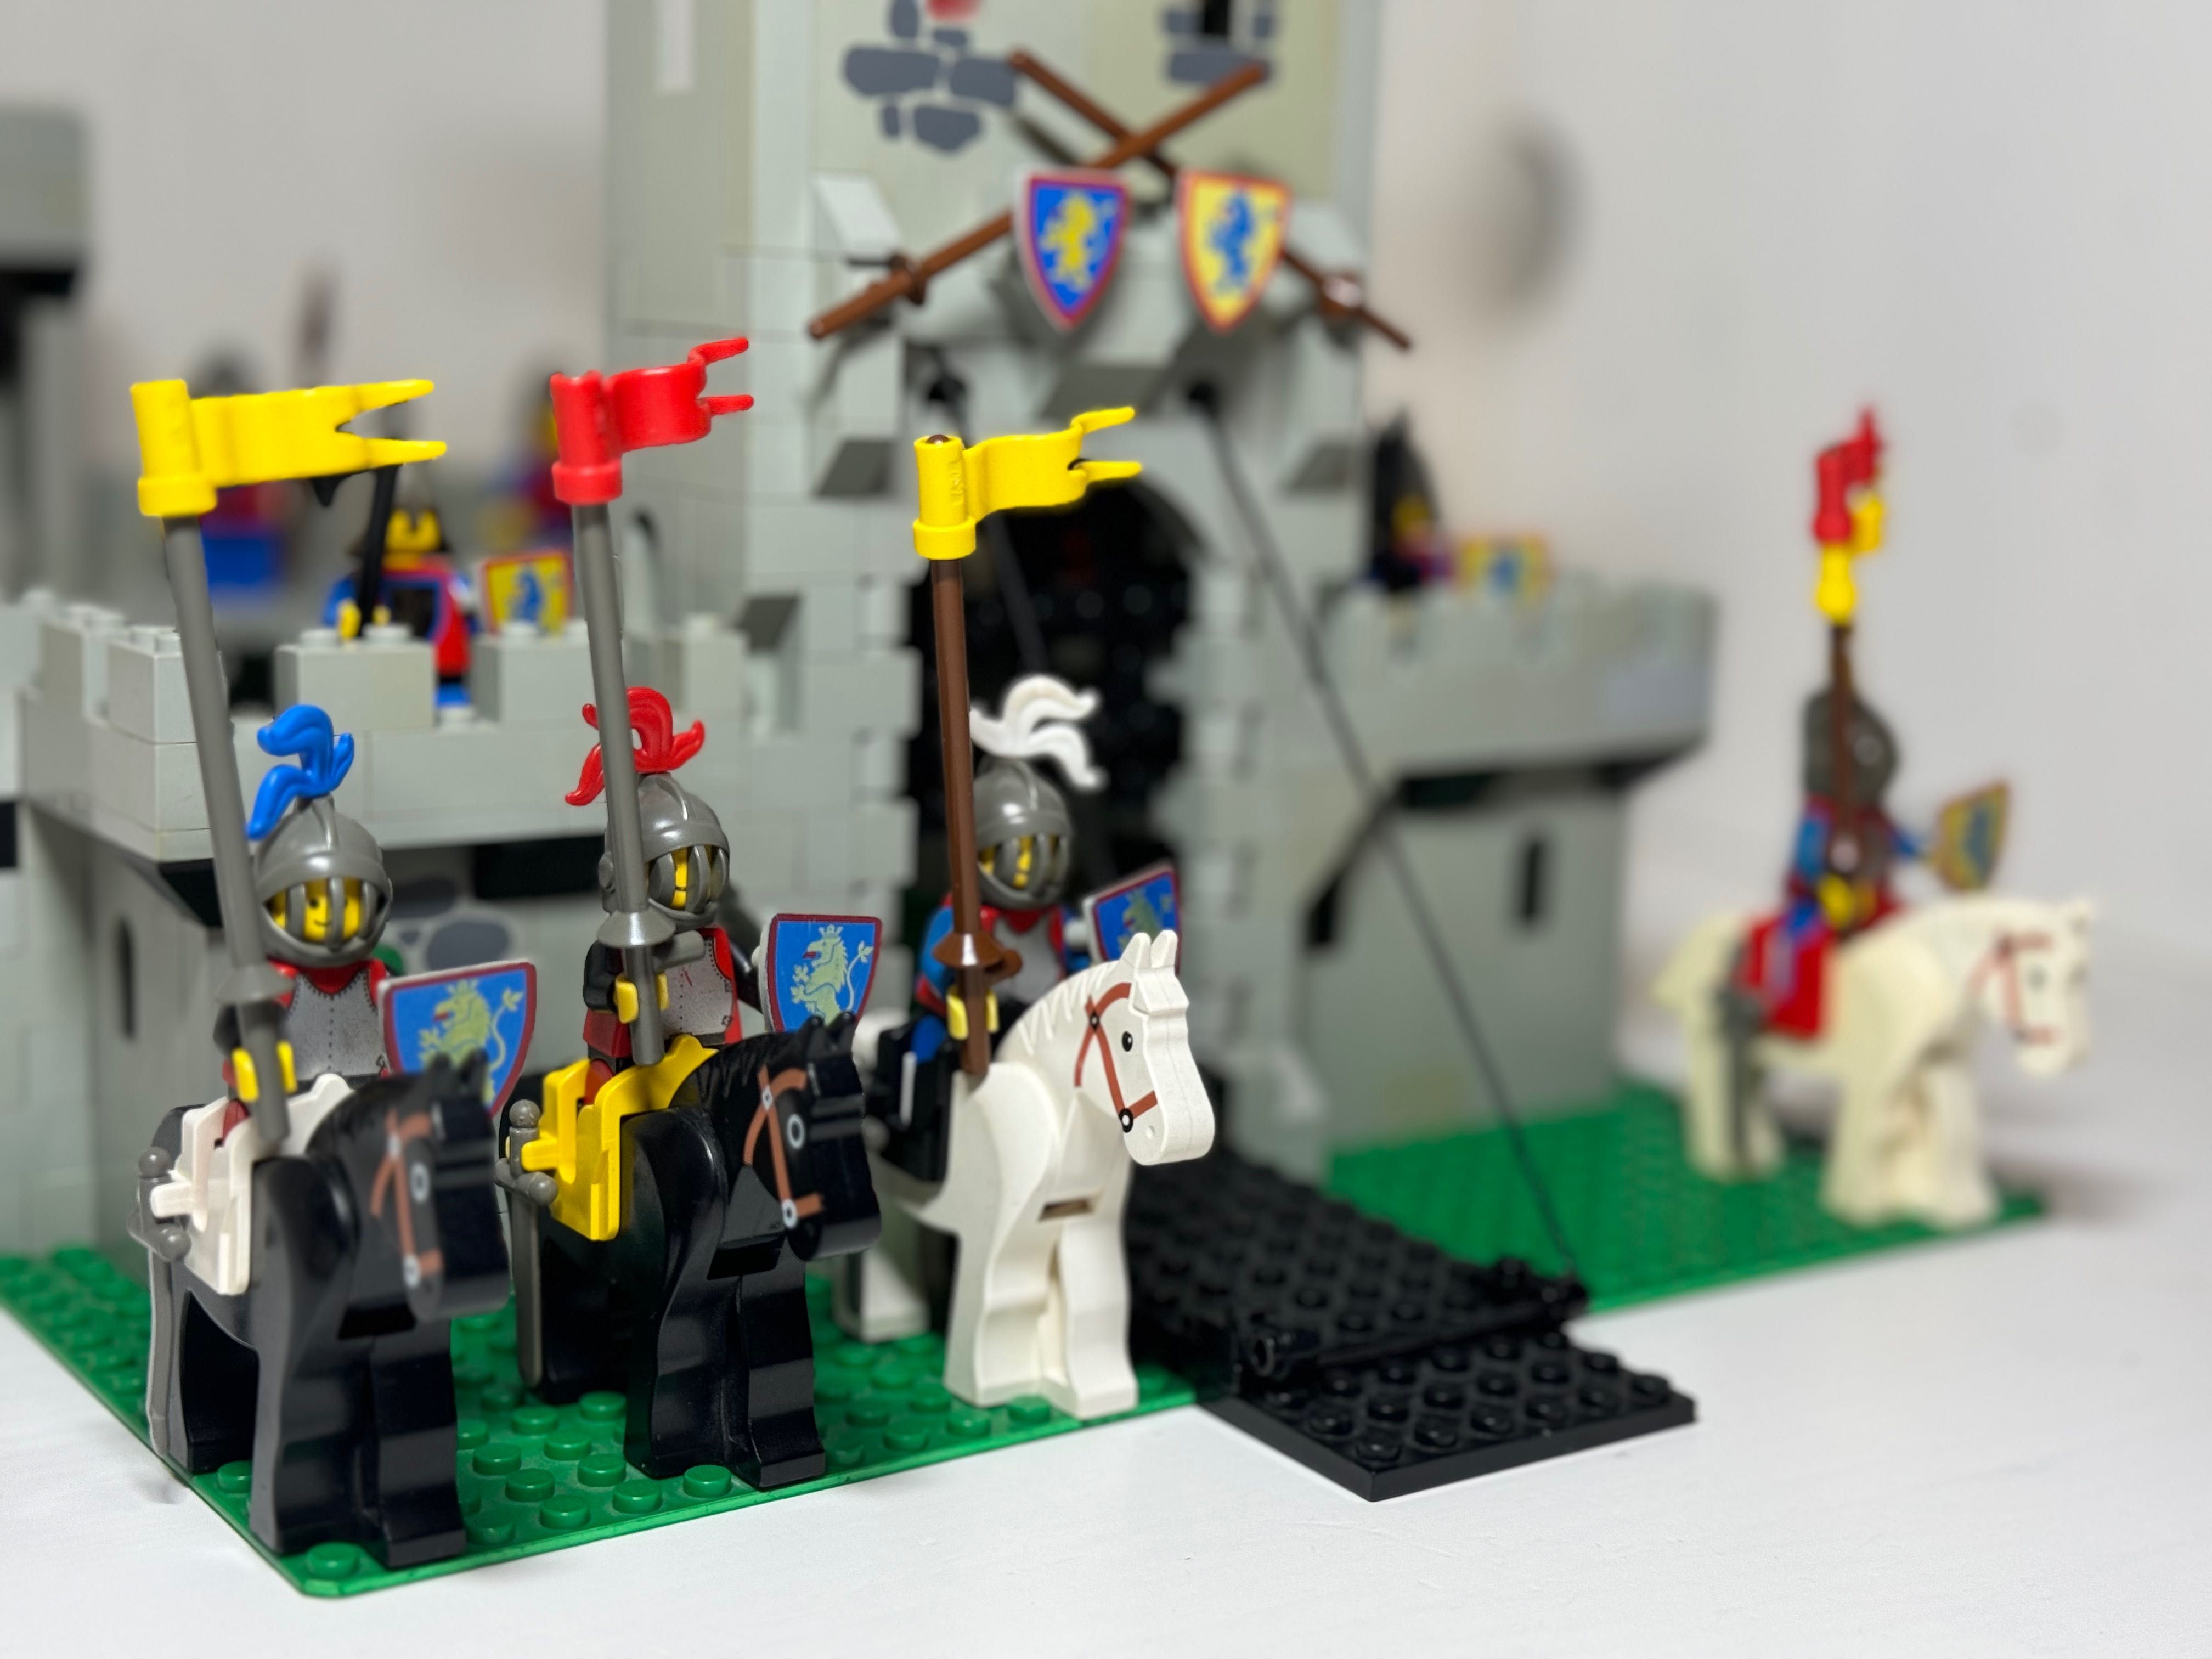 LEGO Castle; zestaw 6080 King's Castle - kompletny